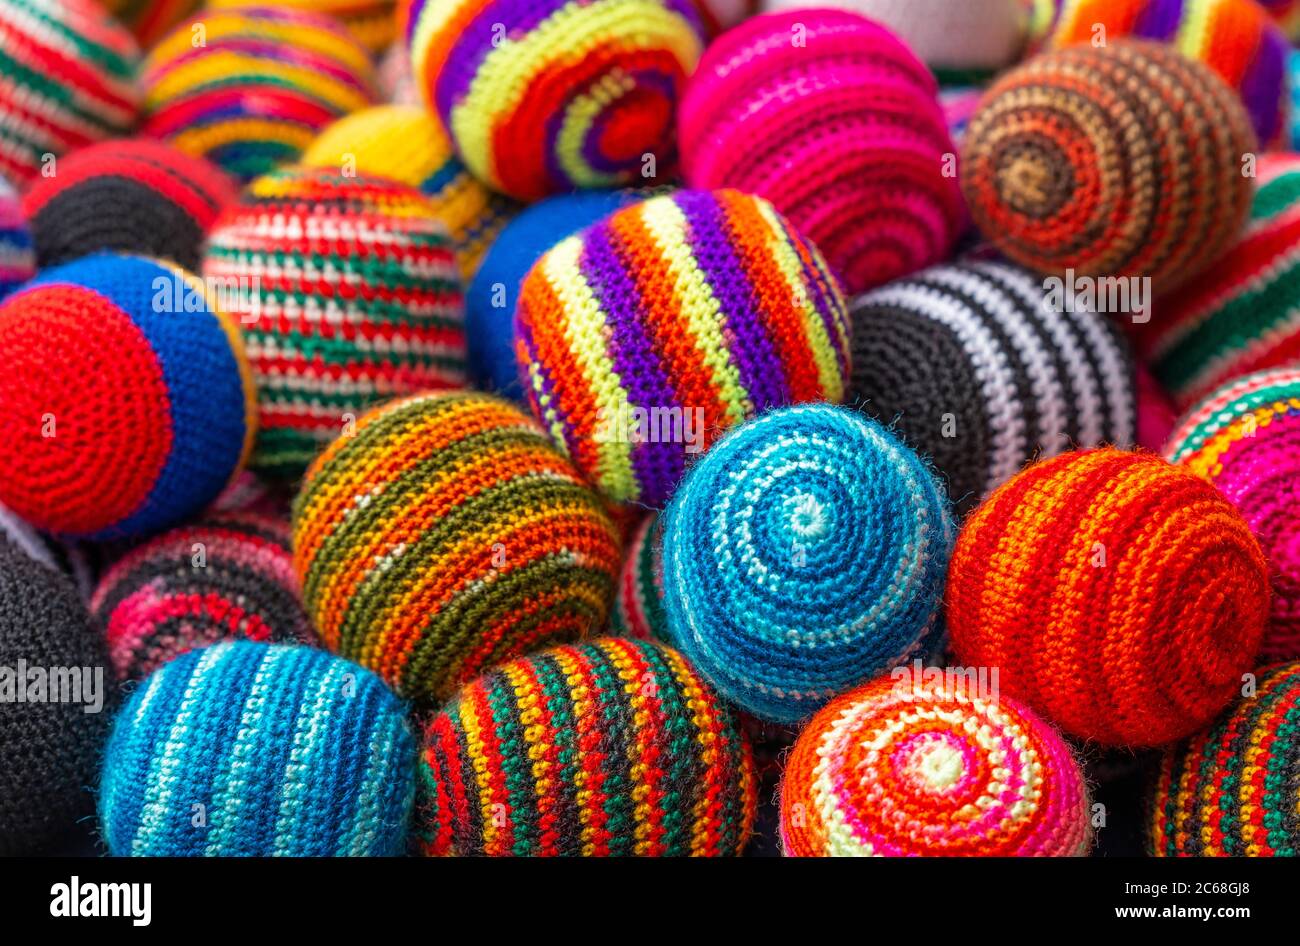 Balles de laine textile en tissu coloré sur le marché artisanal des Andes d'Otavalo, au nord de Quito, en Équateur. Banque D'Images